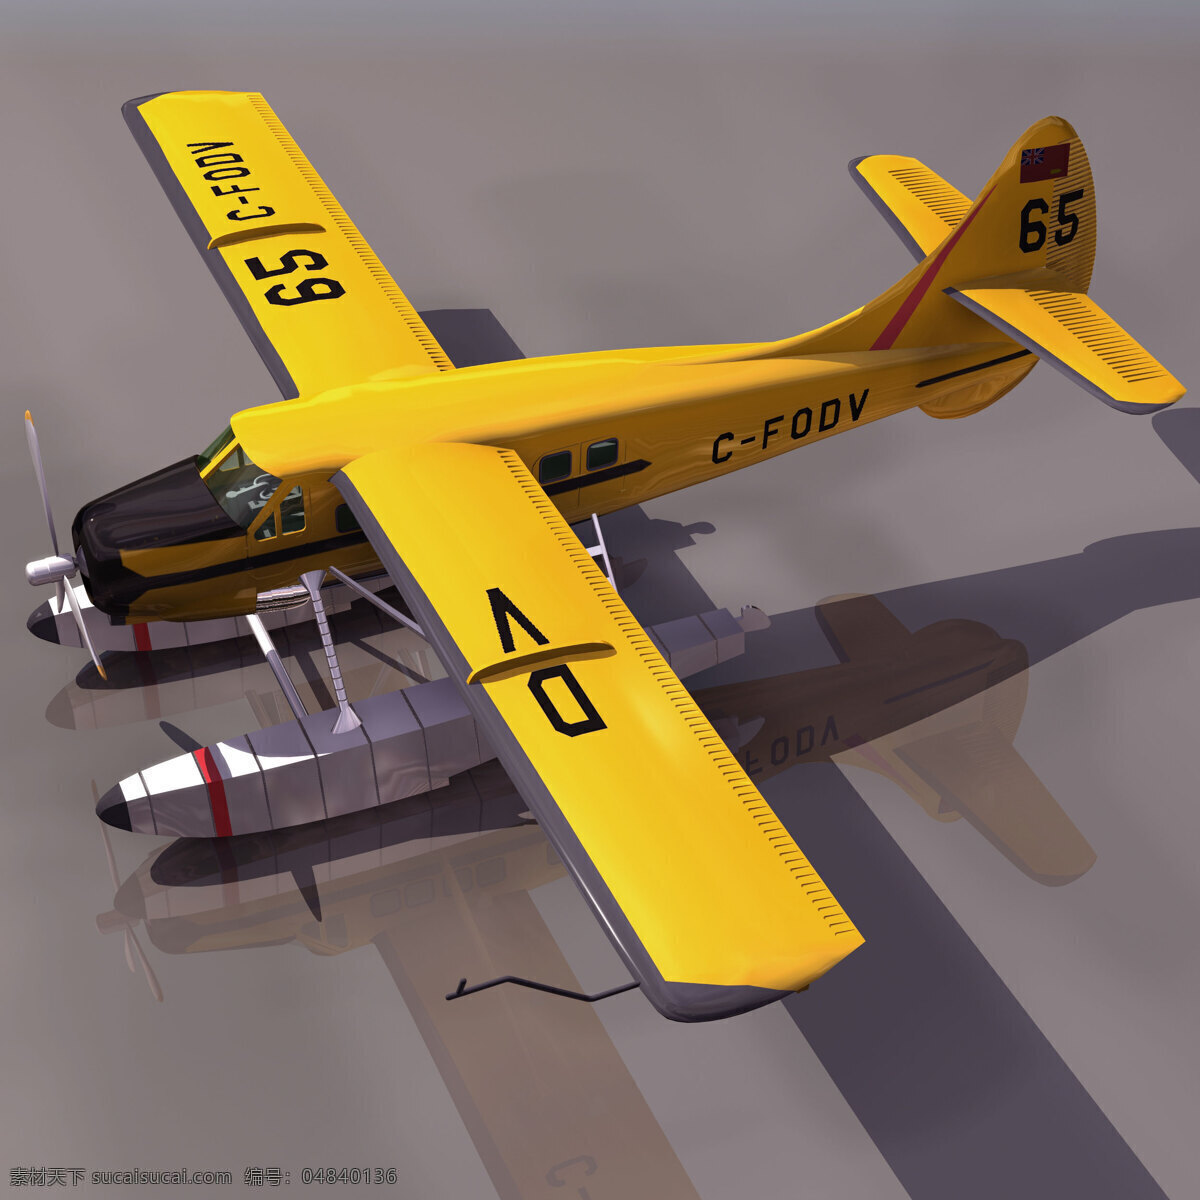 螺旋桨 滑翔机 空中表演 教练机 航模 3d模型素材 其他3d模型